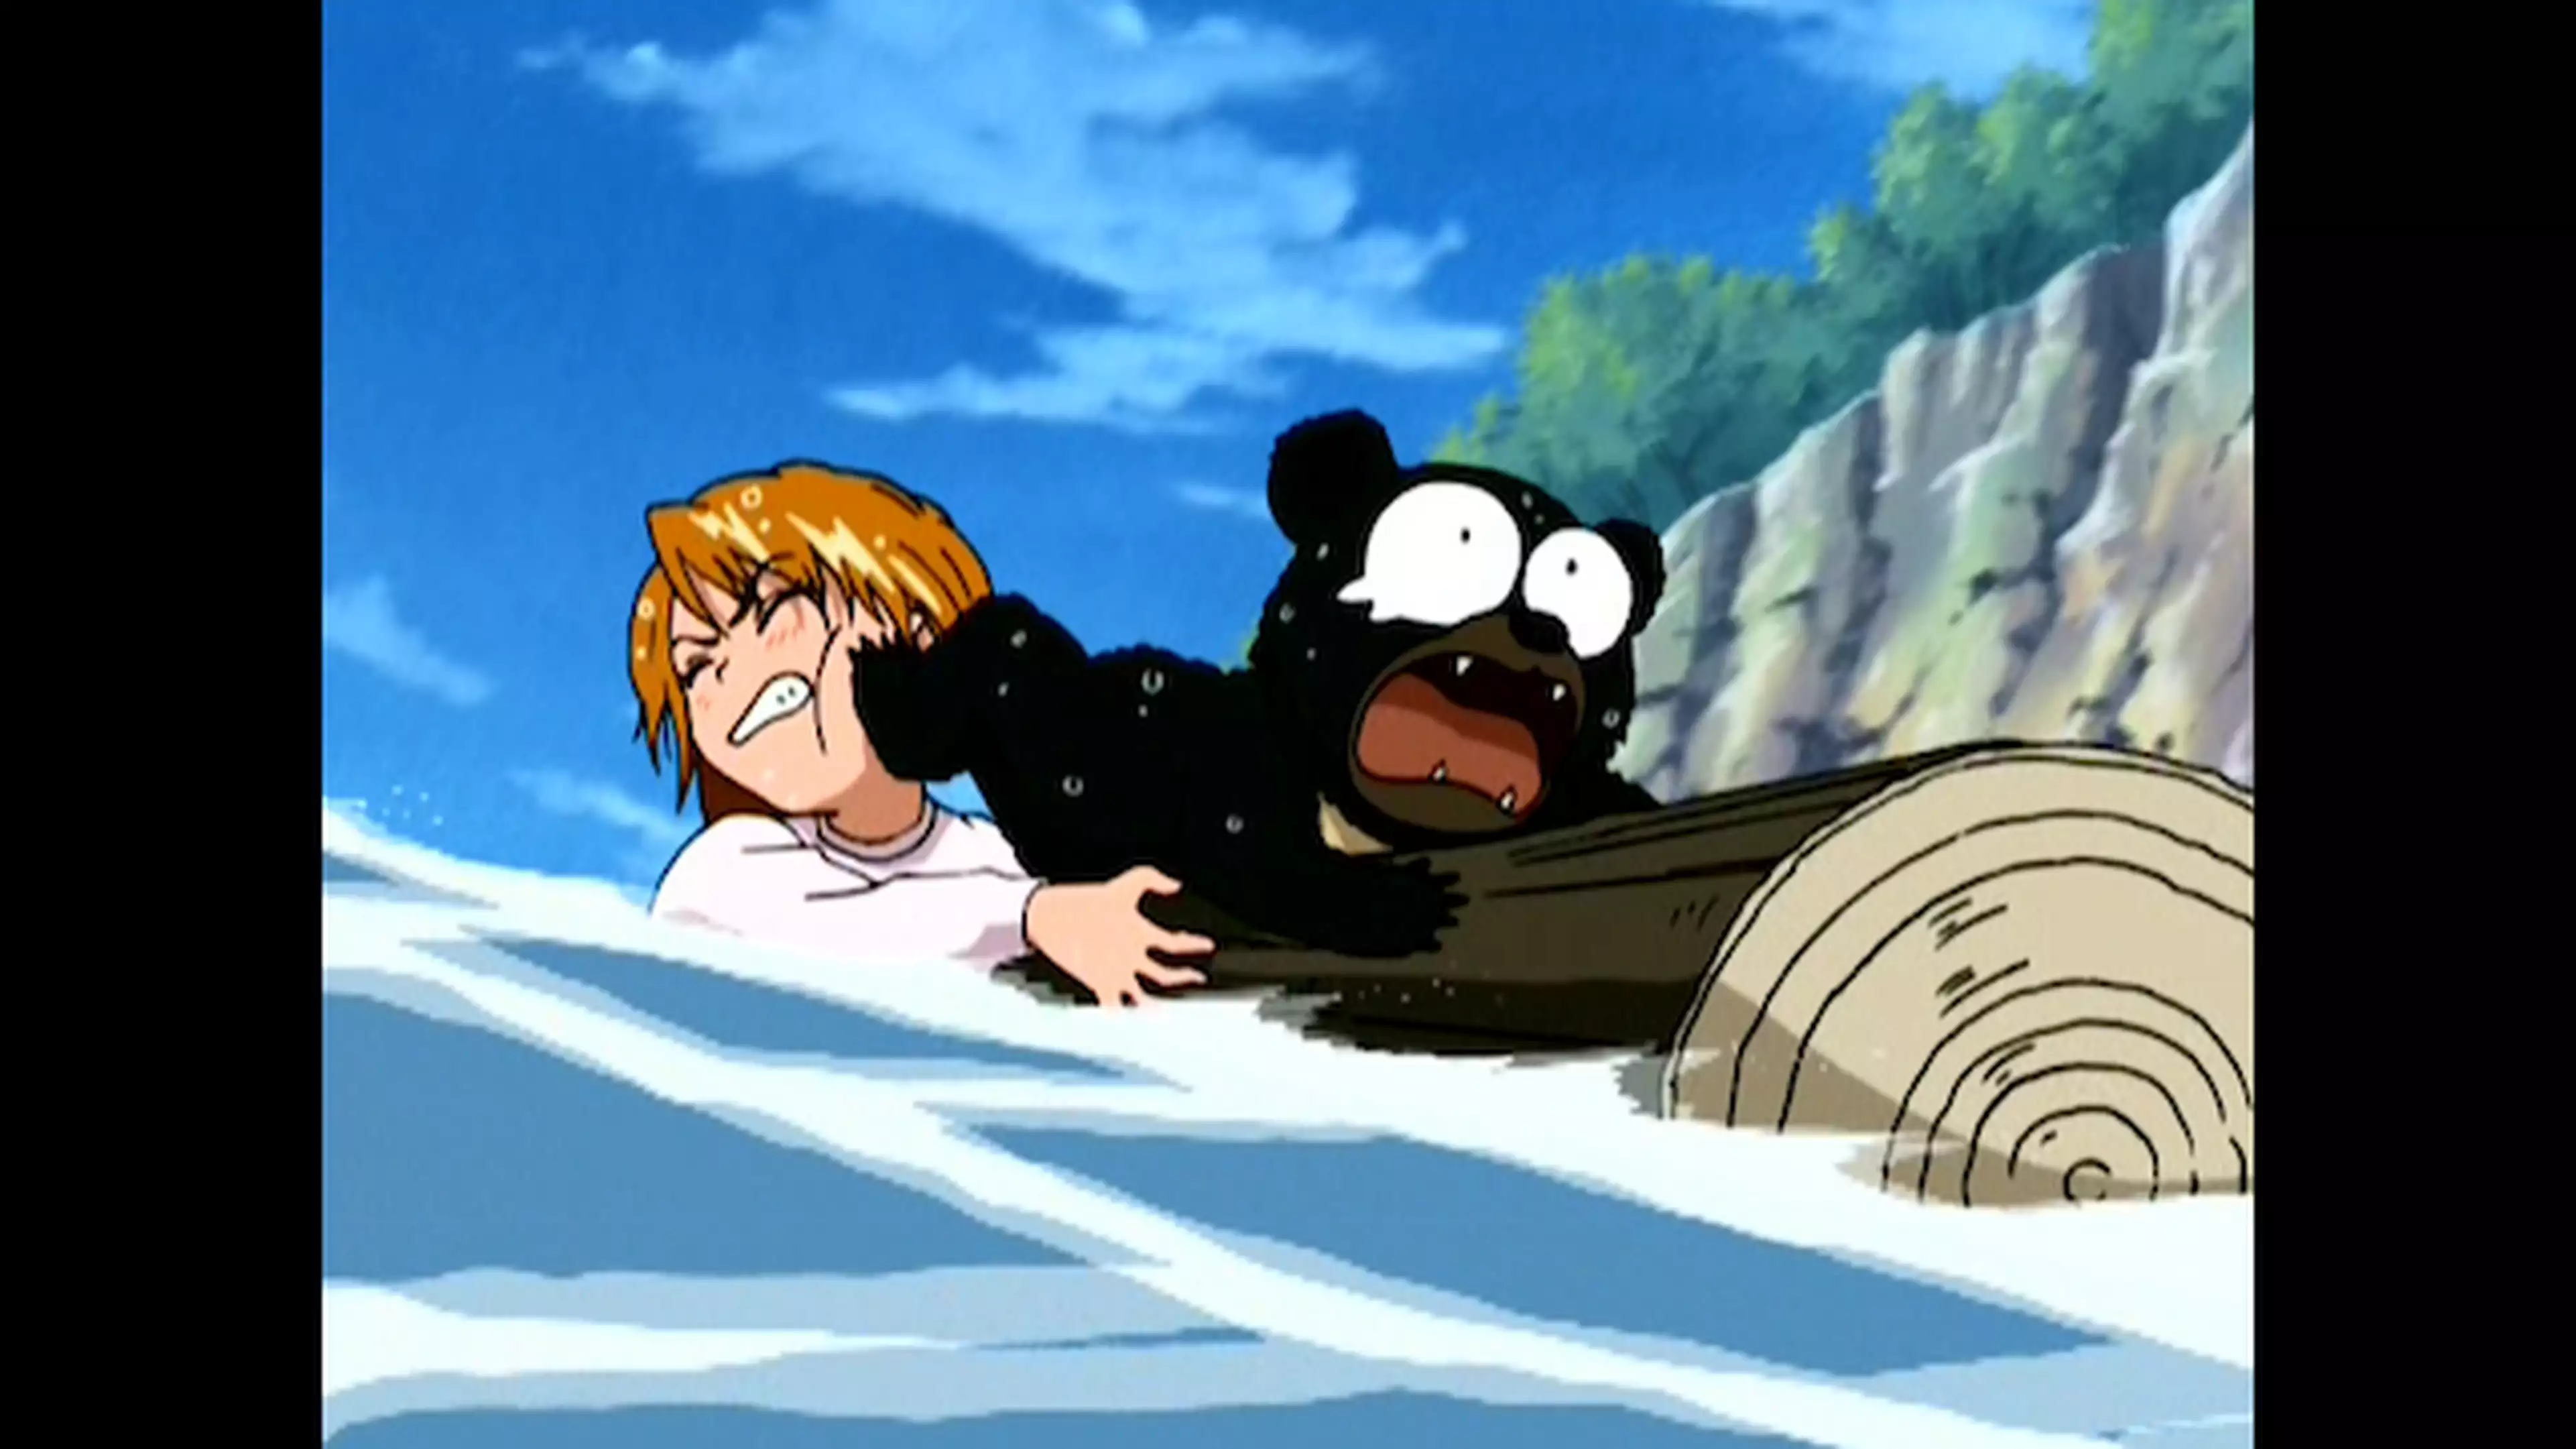 ふたりはプリキュア 第6話 新たな闇 危険な森のクマさん アニメ 04年 の動画視聴 あらすじ U Next